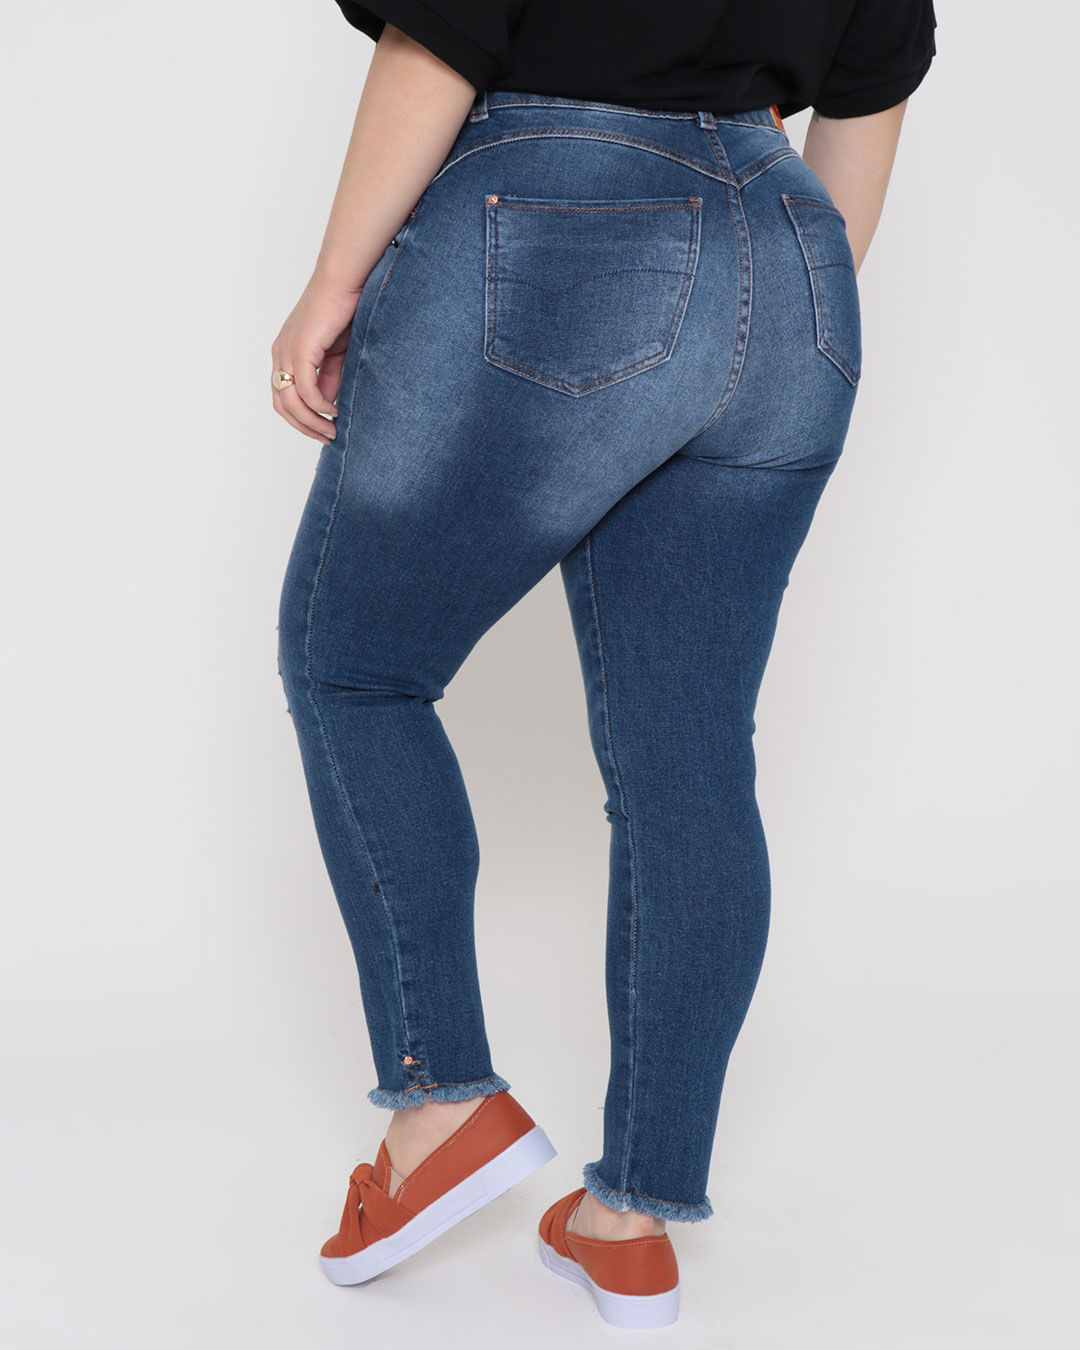 Calca-Jeans-Plus-Size-Feminina-Puidos-Cigarrete-Biotipo-Azul-